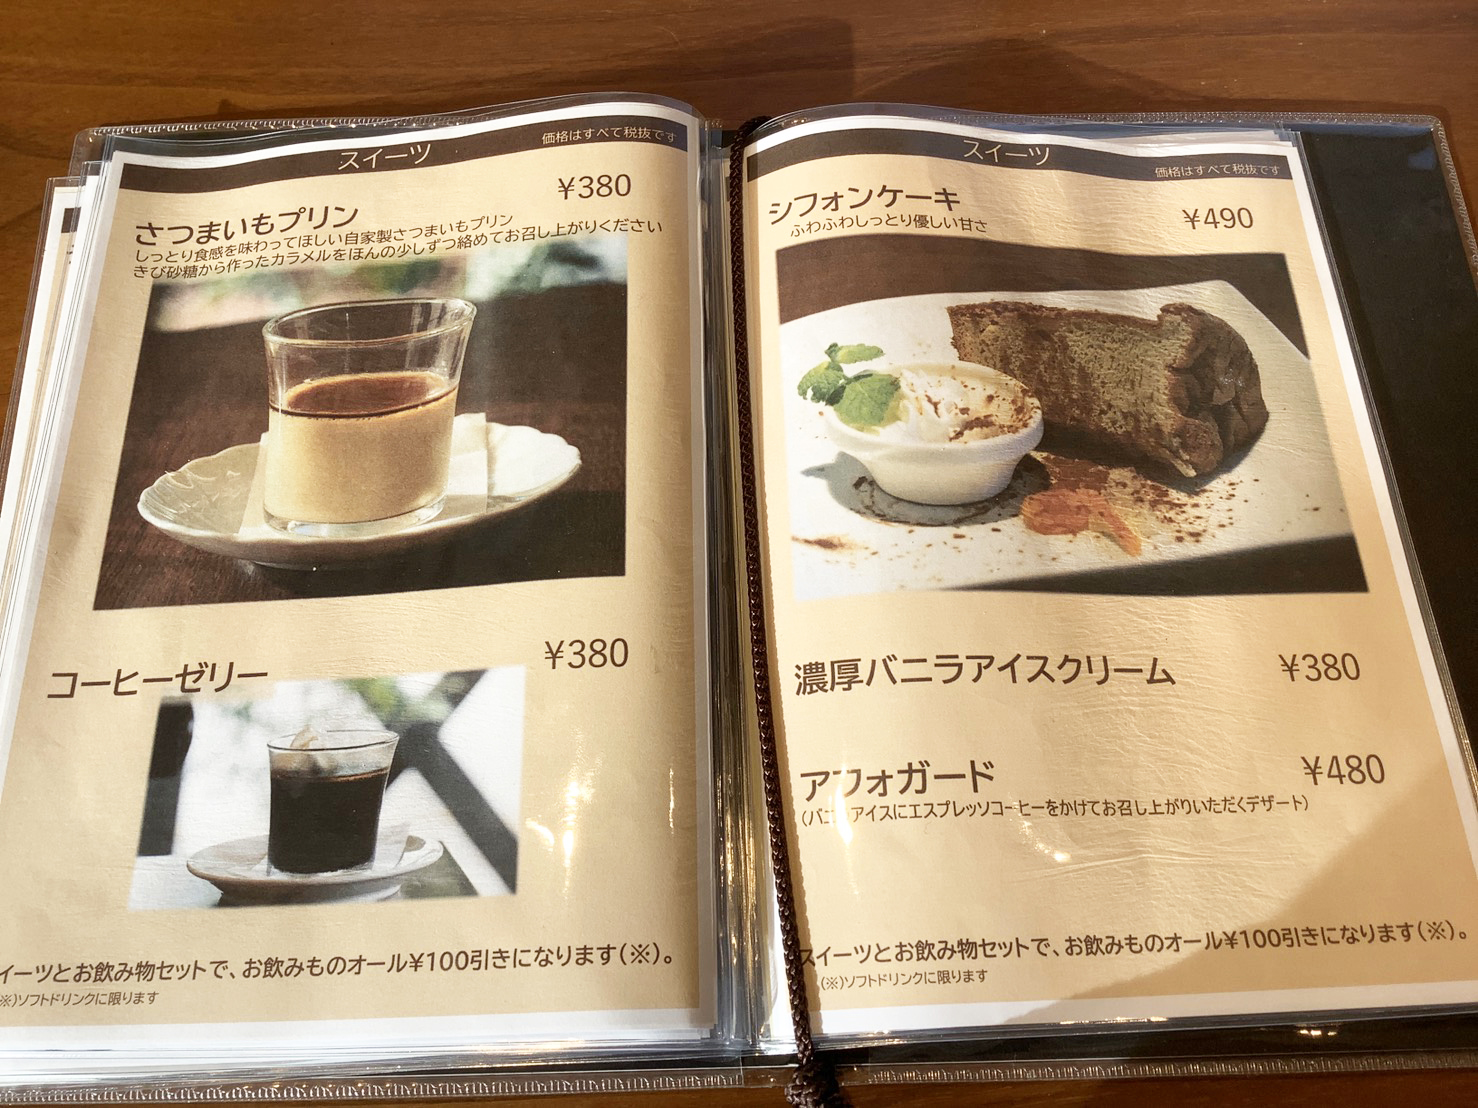 HASUNOKA Cafe